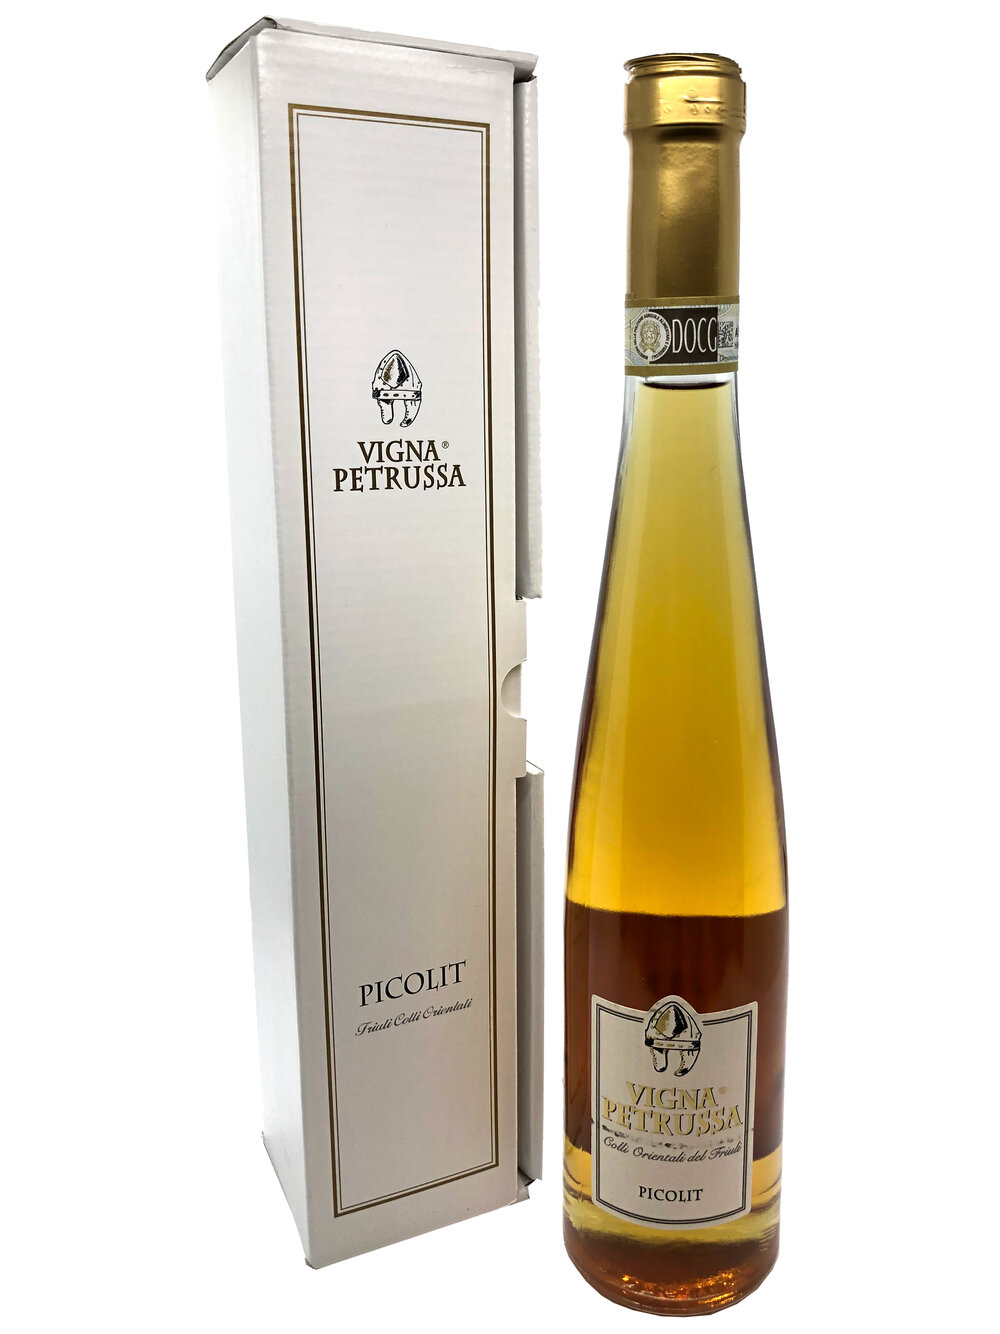 Vigna Petrussa Picolit Dessert Wine